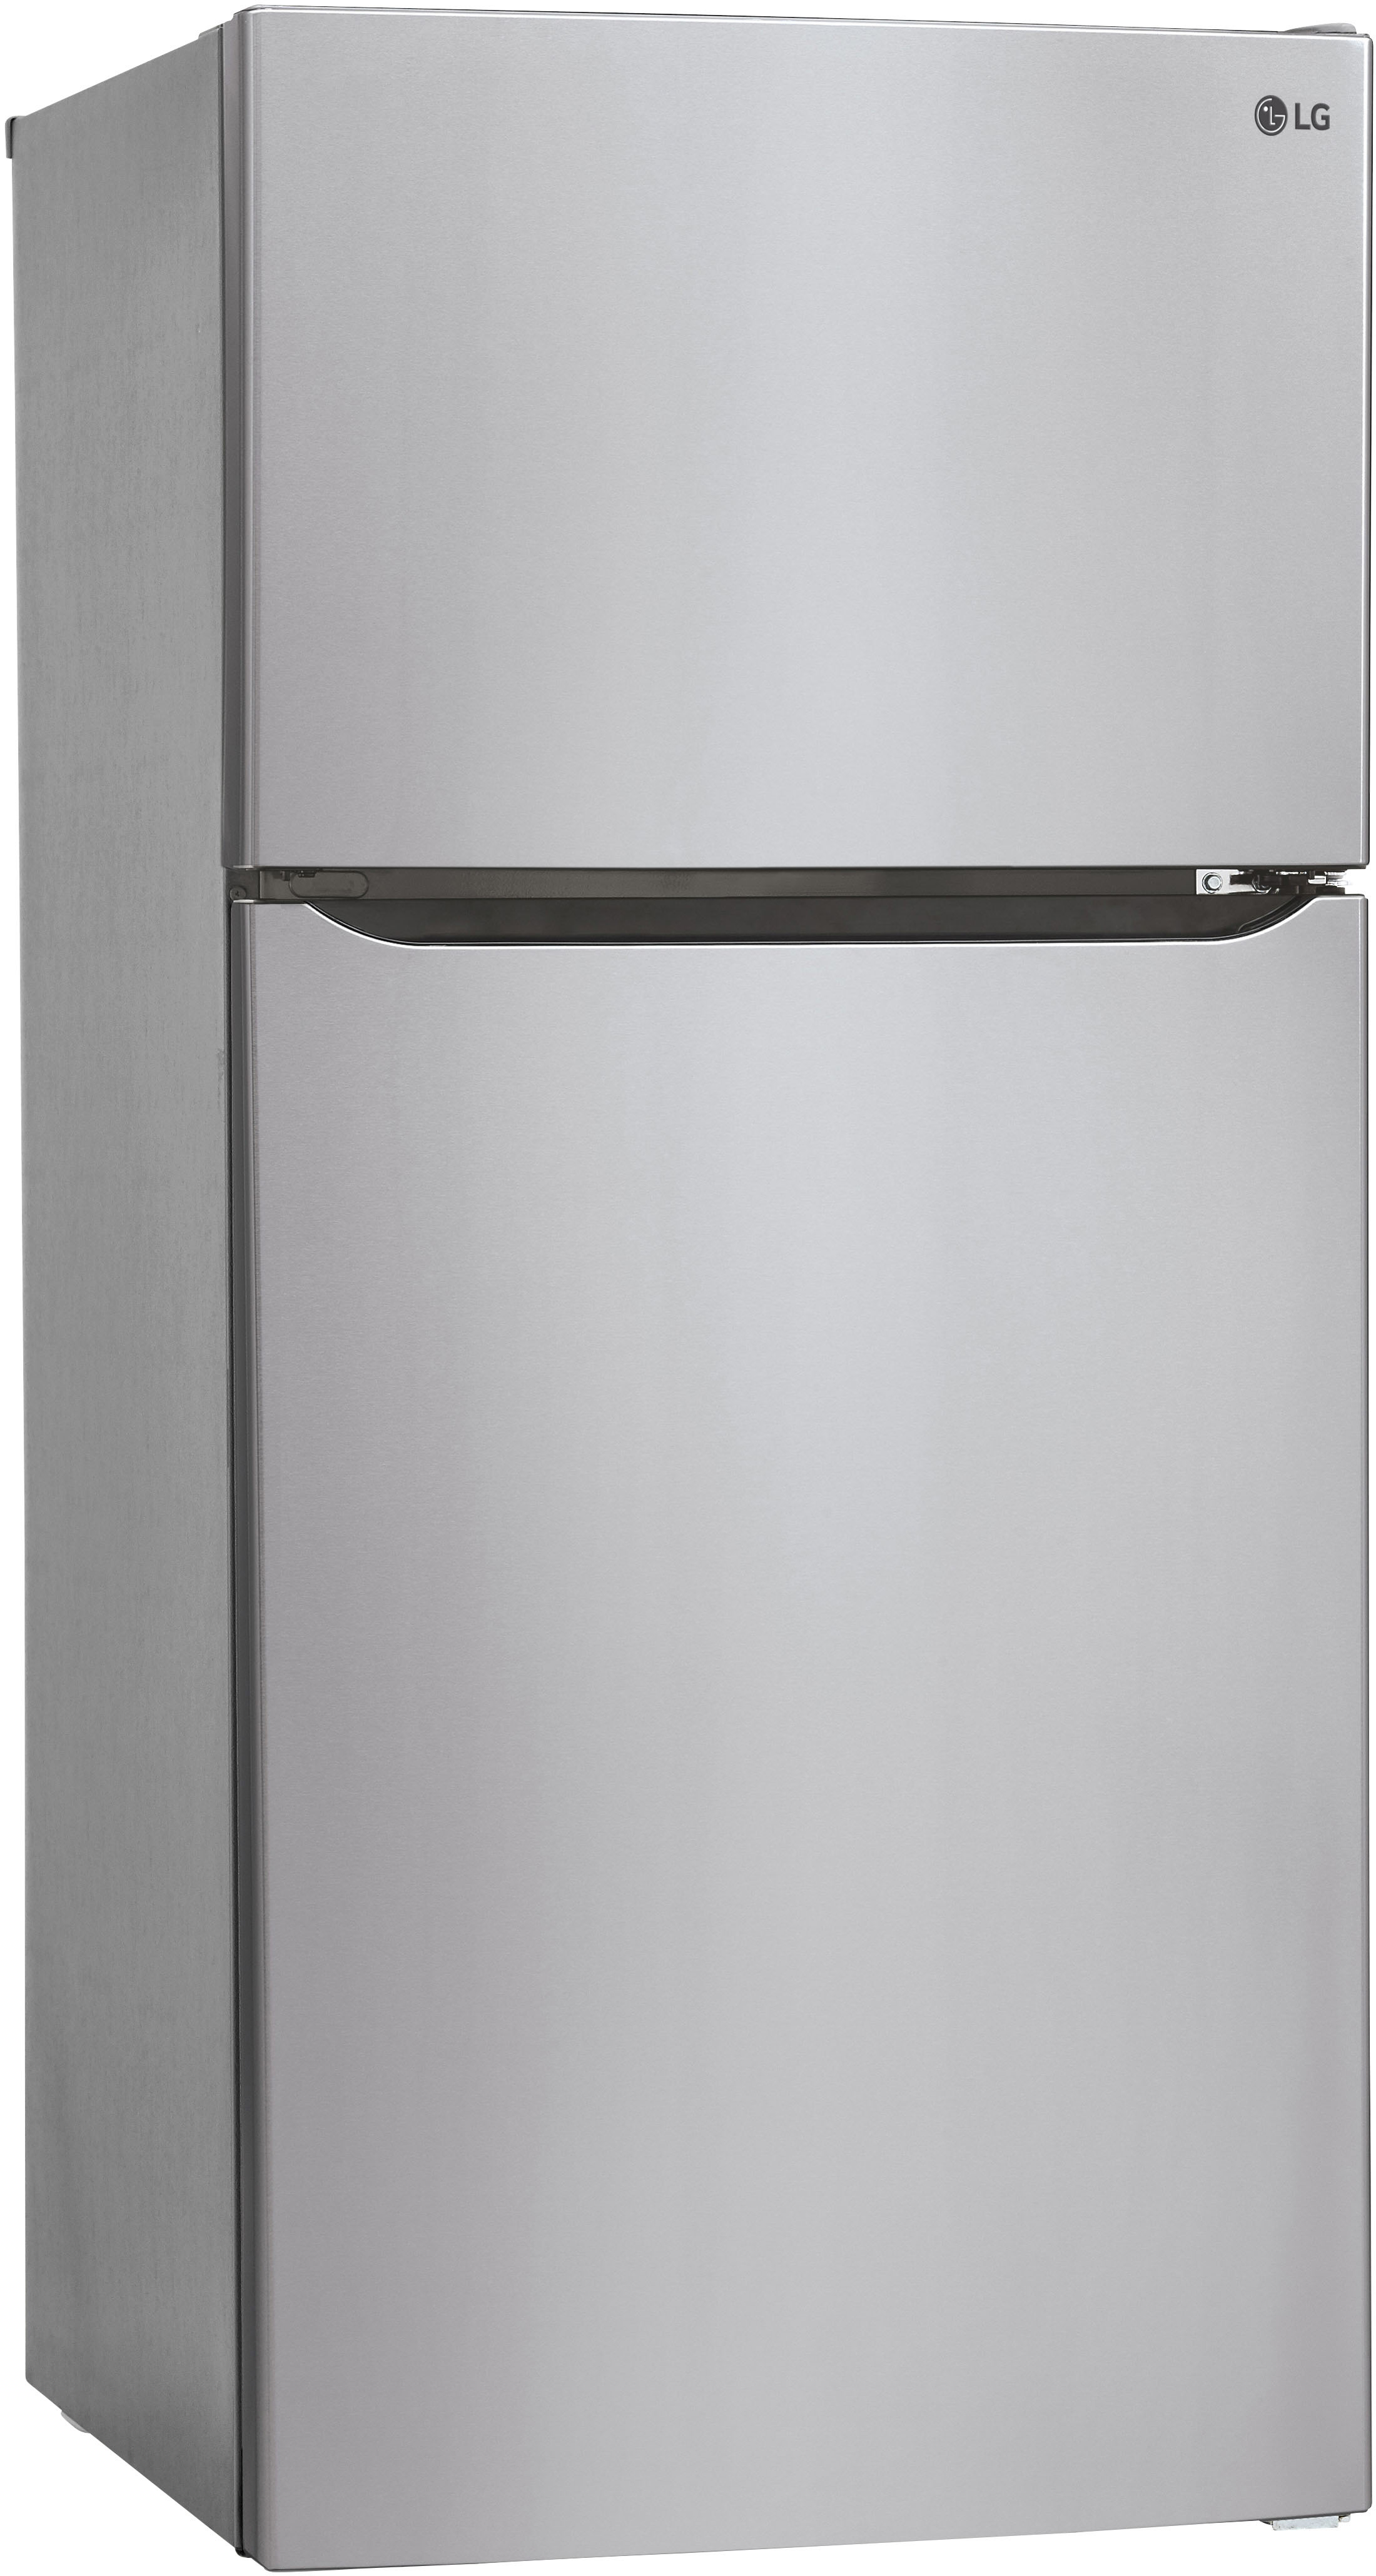 Left View: Samsung - 22 cu. ft. Smart 3-Door French Door Refrigerator with External Water Dispenser - Stainless steel